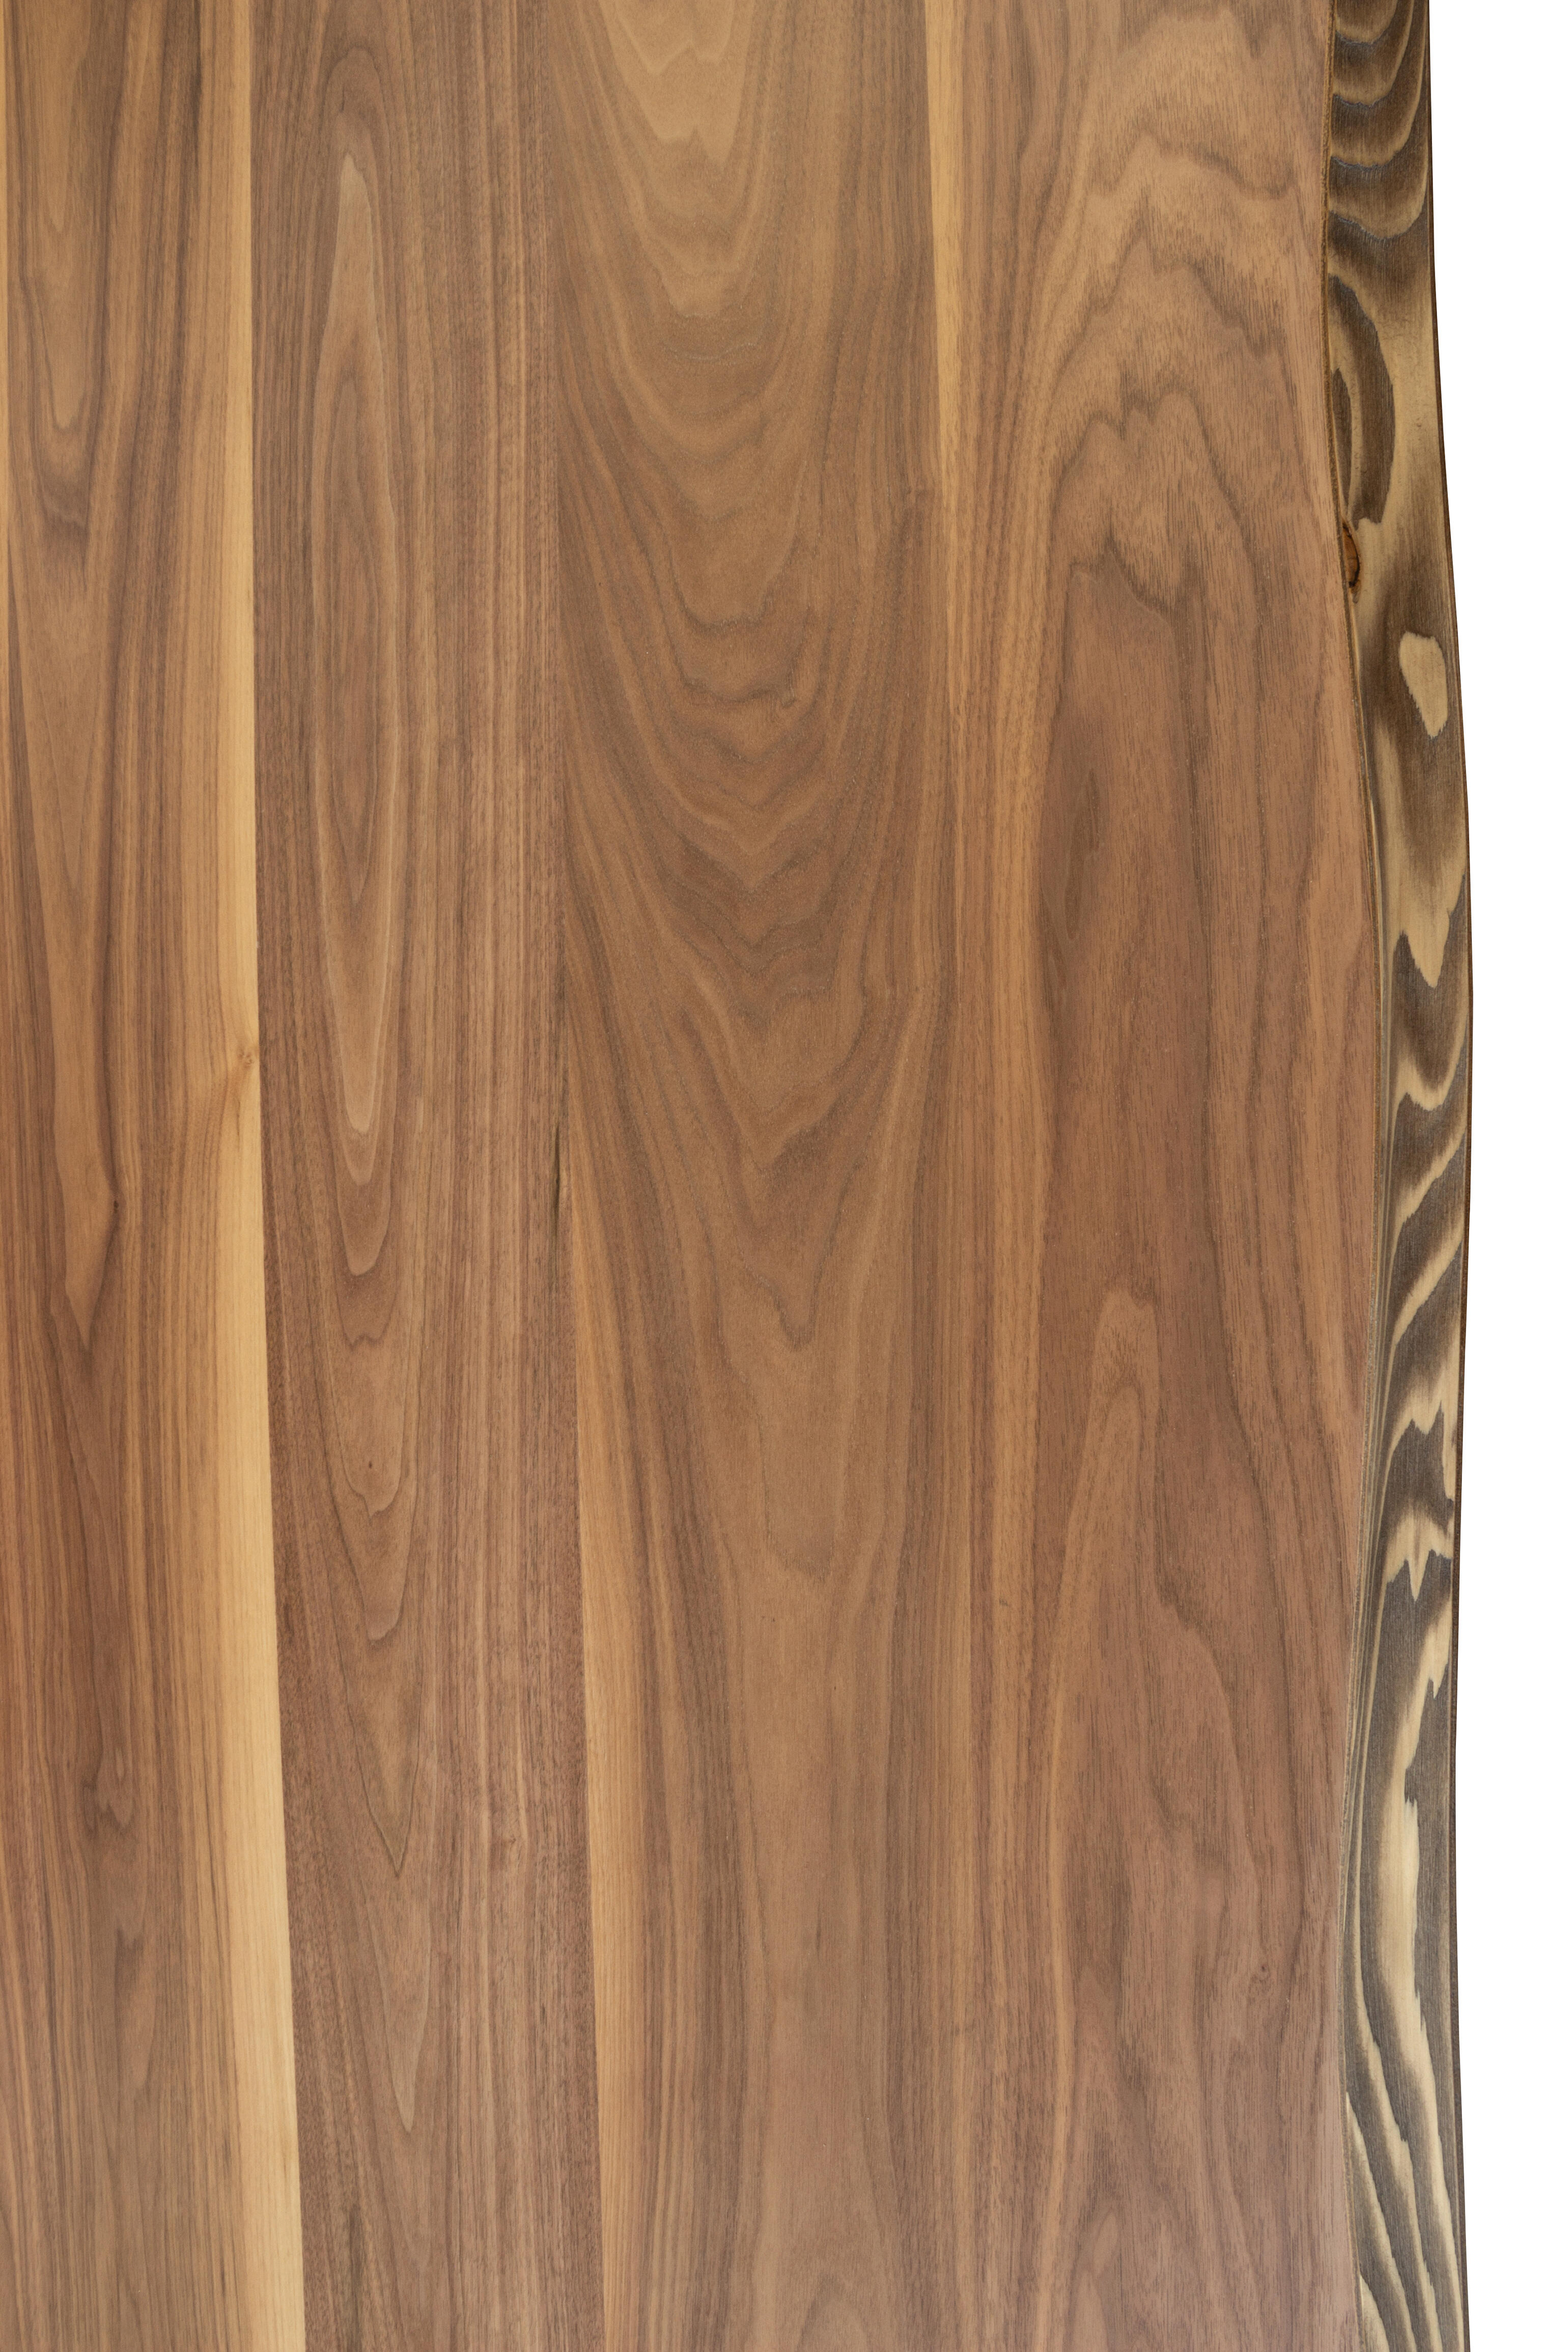 Tablero para mesa rechapado en madera de nogal 92,5x185x4,8 cm lados forma árbol